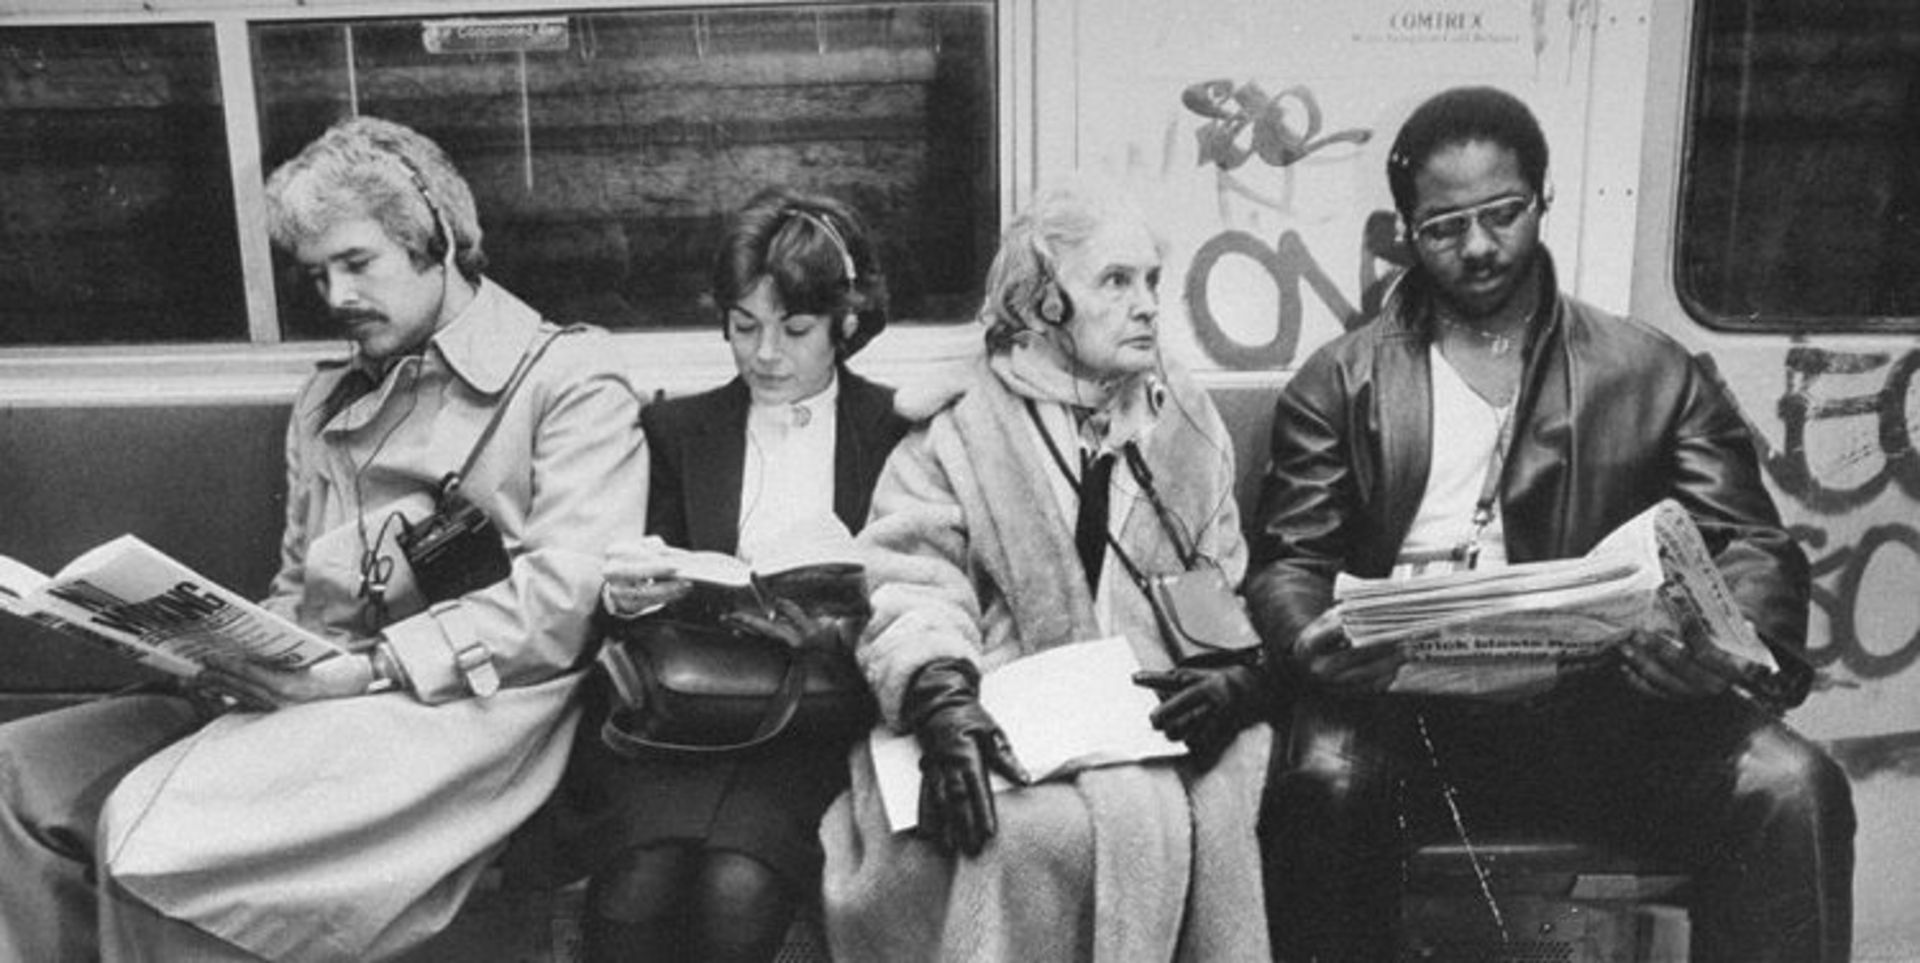 مرجع متخصصين ايران چهار مسافر در حال گوش دادن به واكمن در مترو نيويورك 1981